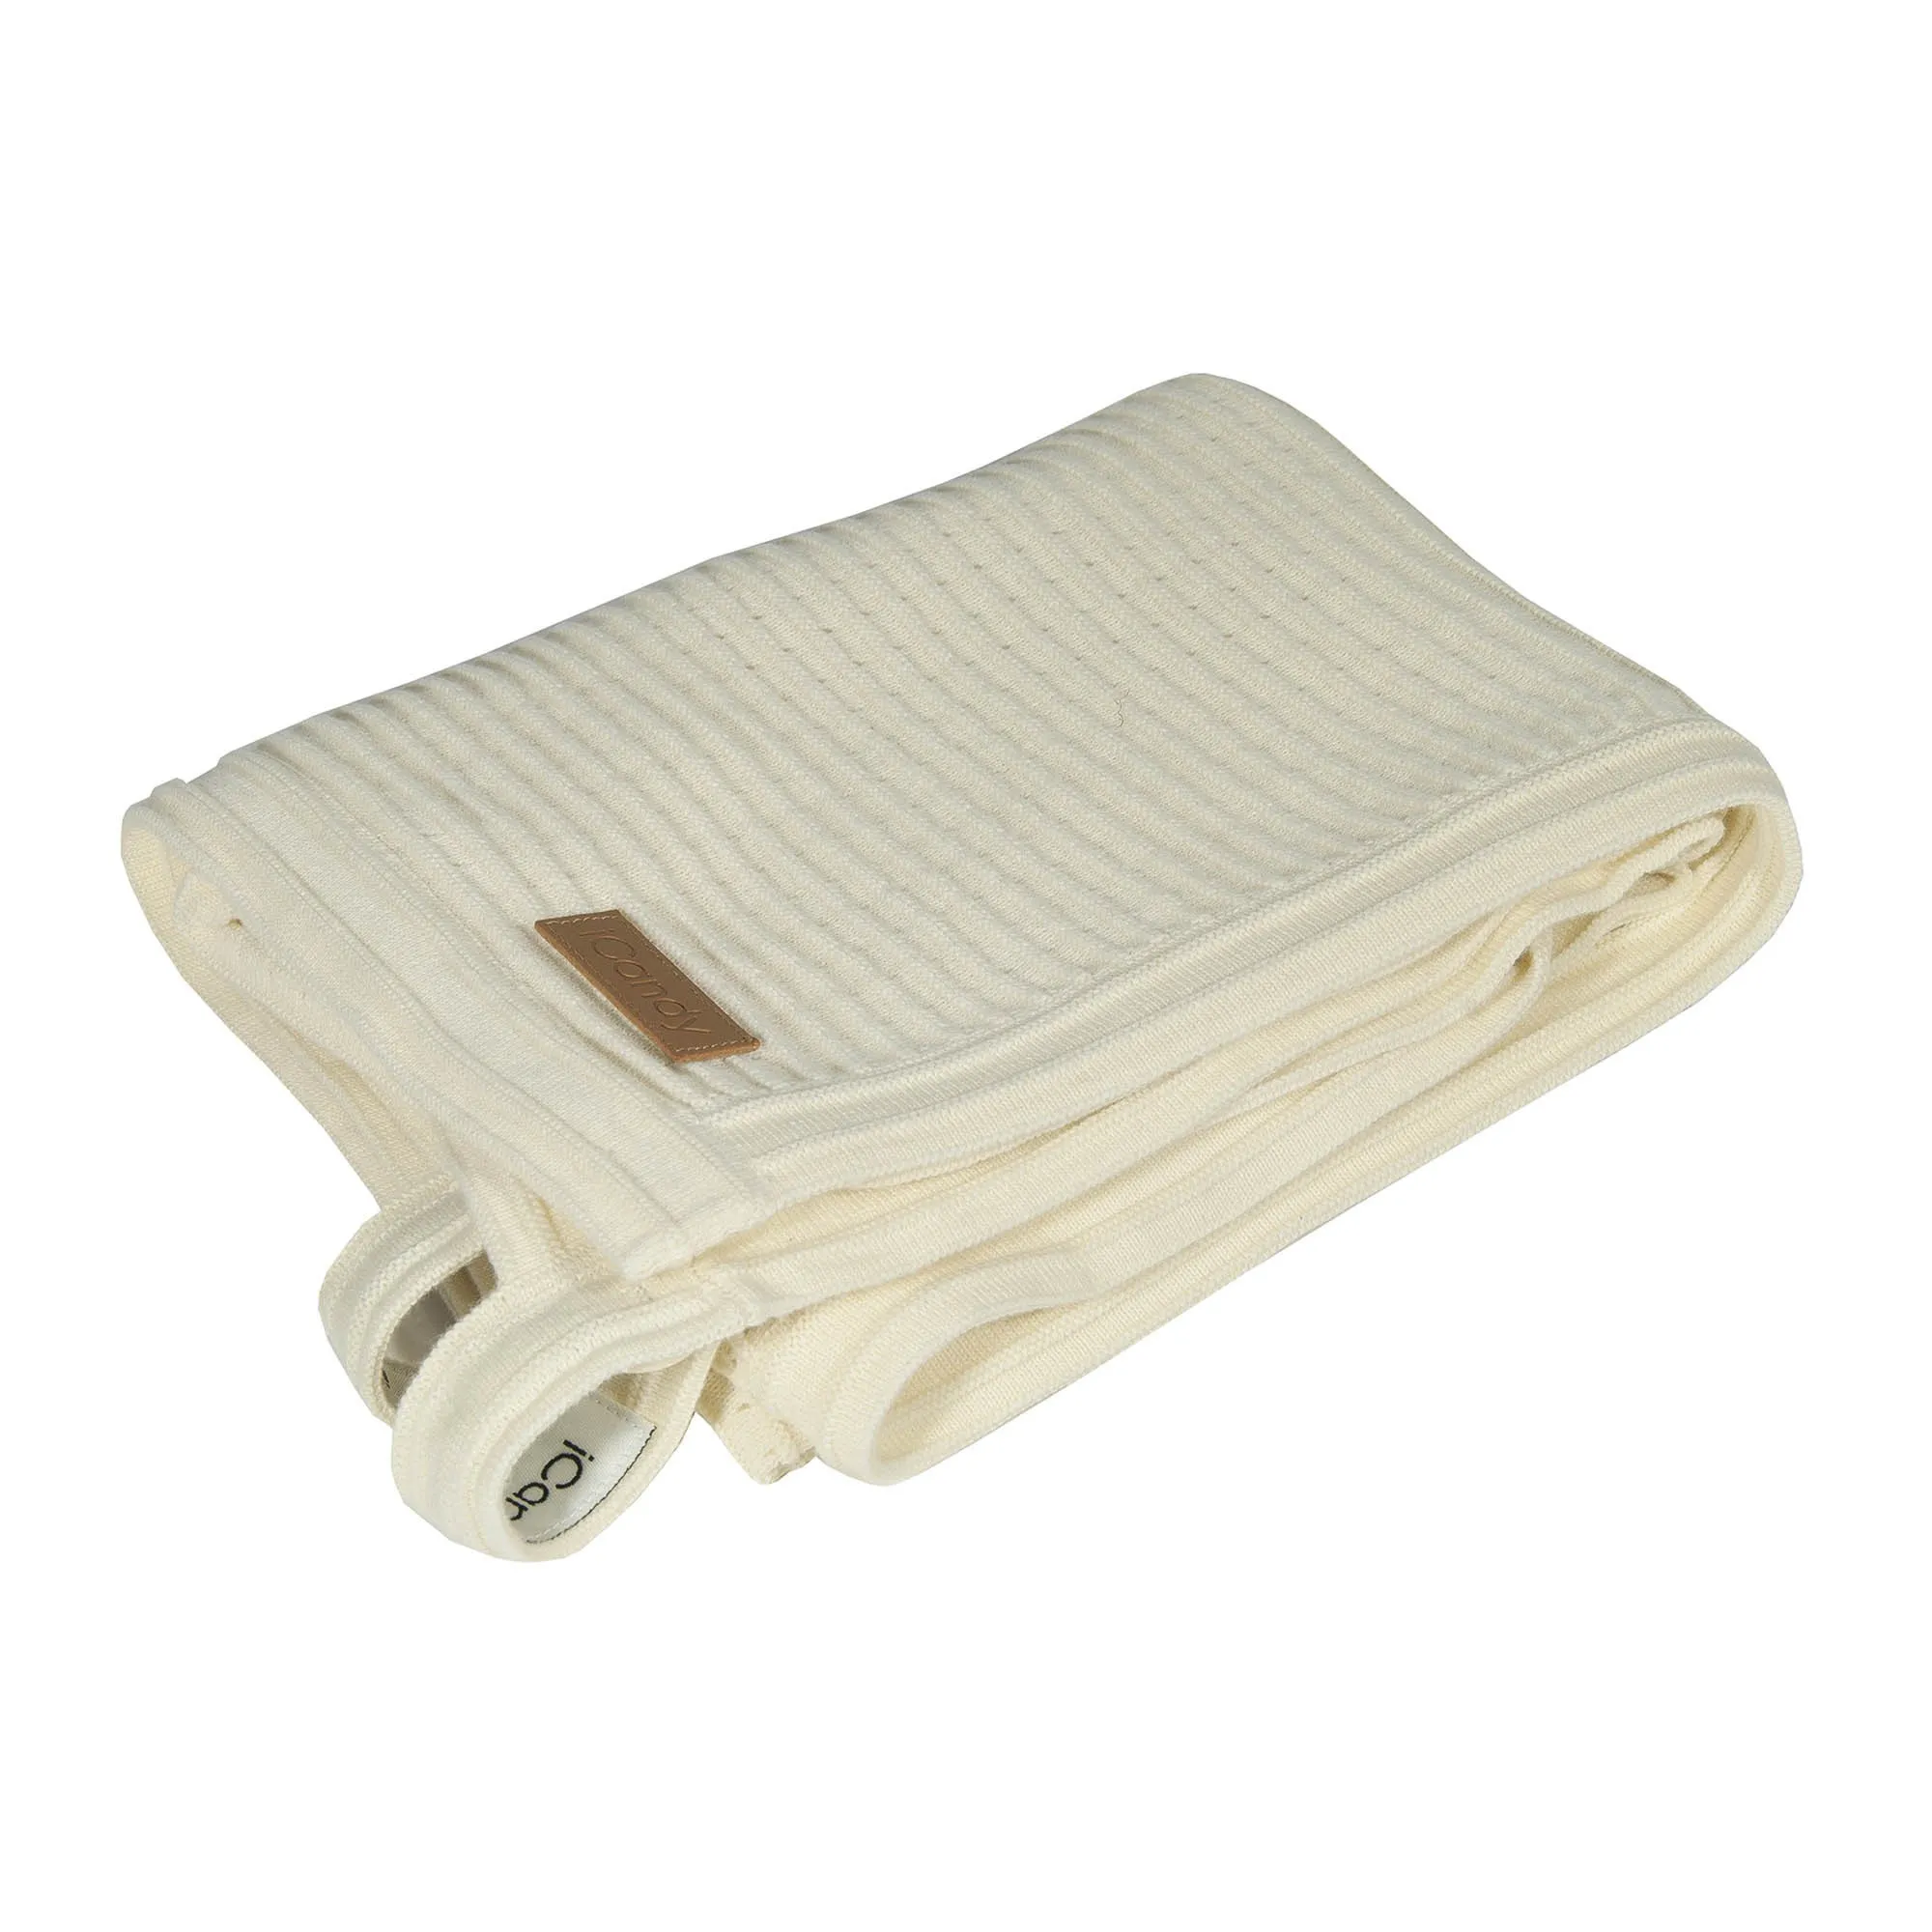 https://www.roshko.bg/media/catalog/product/cache/1/image/9df78eab33525d08d6e5fb8d27136e95/i/c/iCandy одеяло за количка Summer Antique White.webp